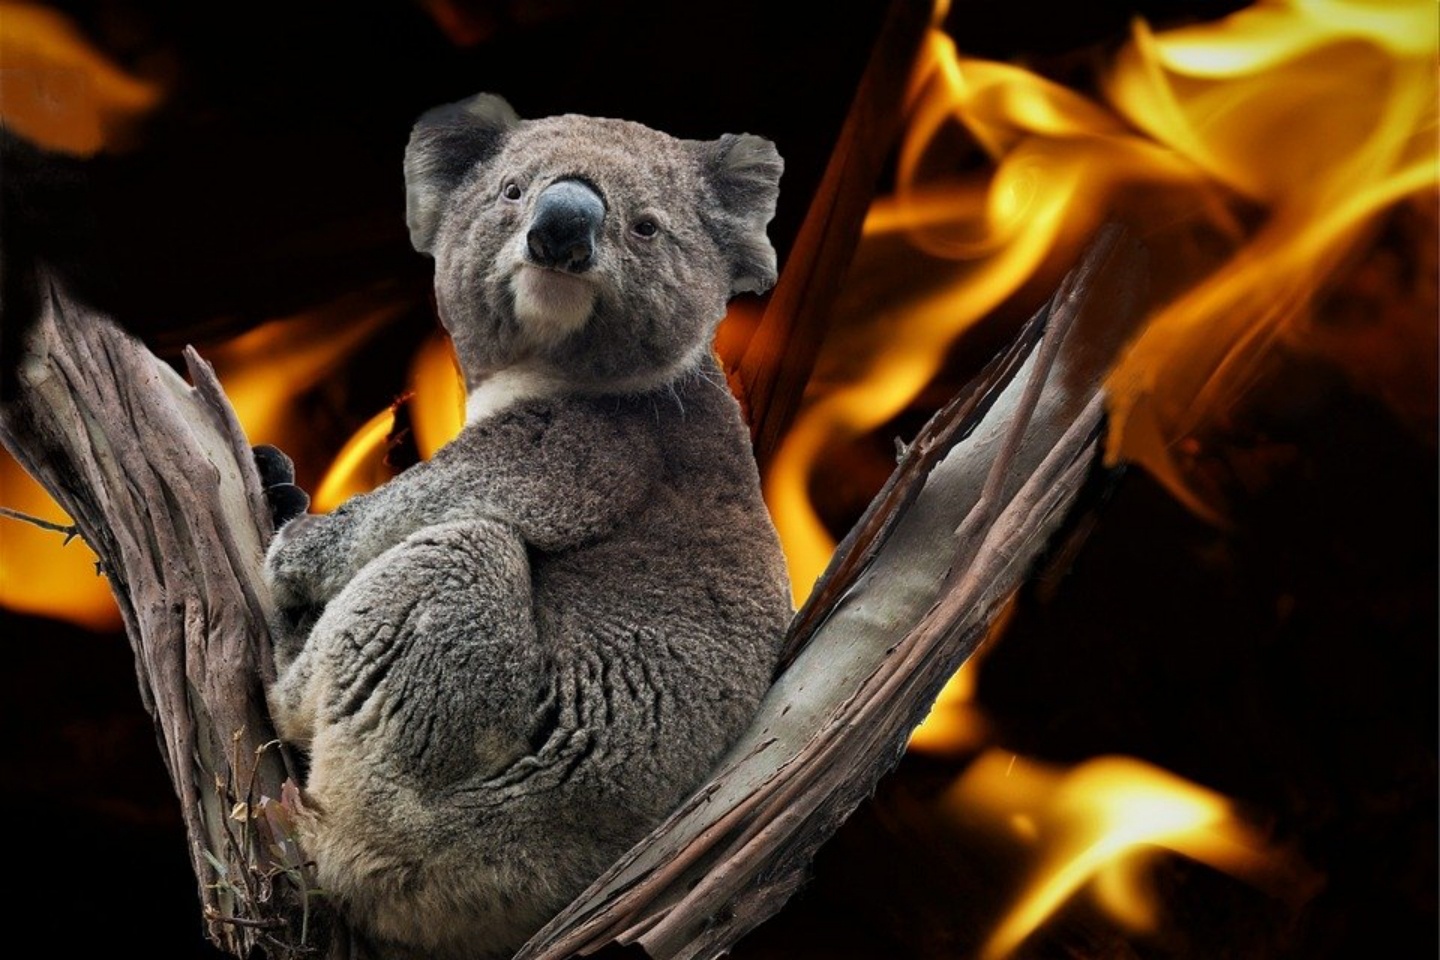 致敬澳洲救火英雄，雪梨歌劇院點燈了！想要領養無尾熊、救助受災戶！告訴你該怎麼為澳洲大火盡一份力